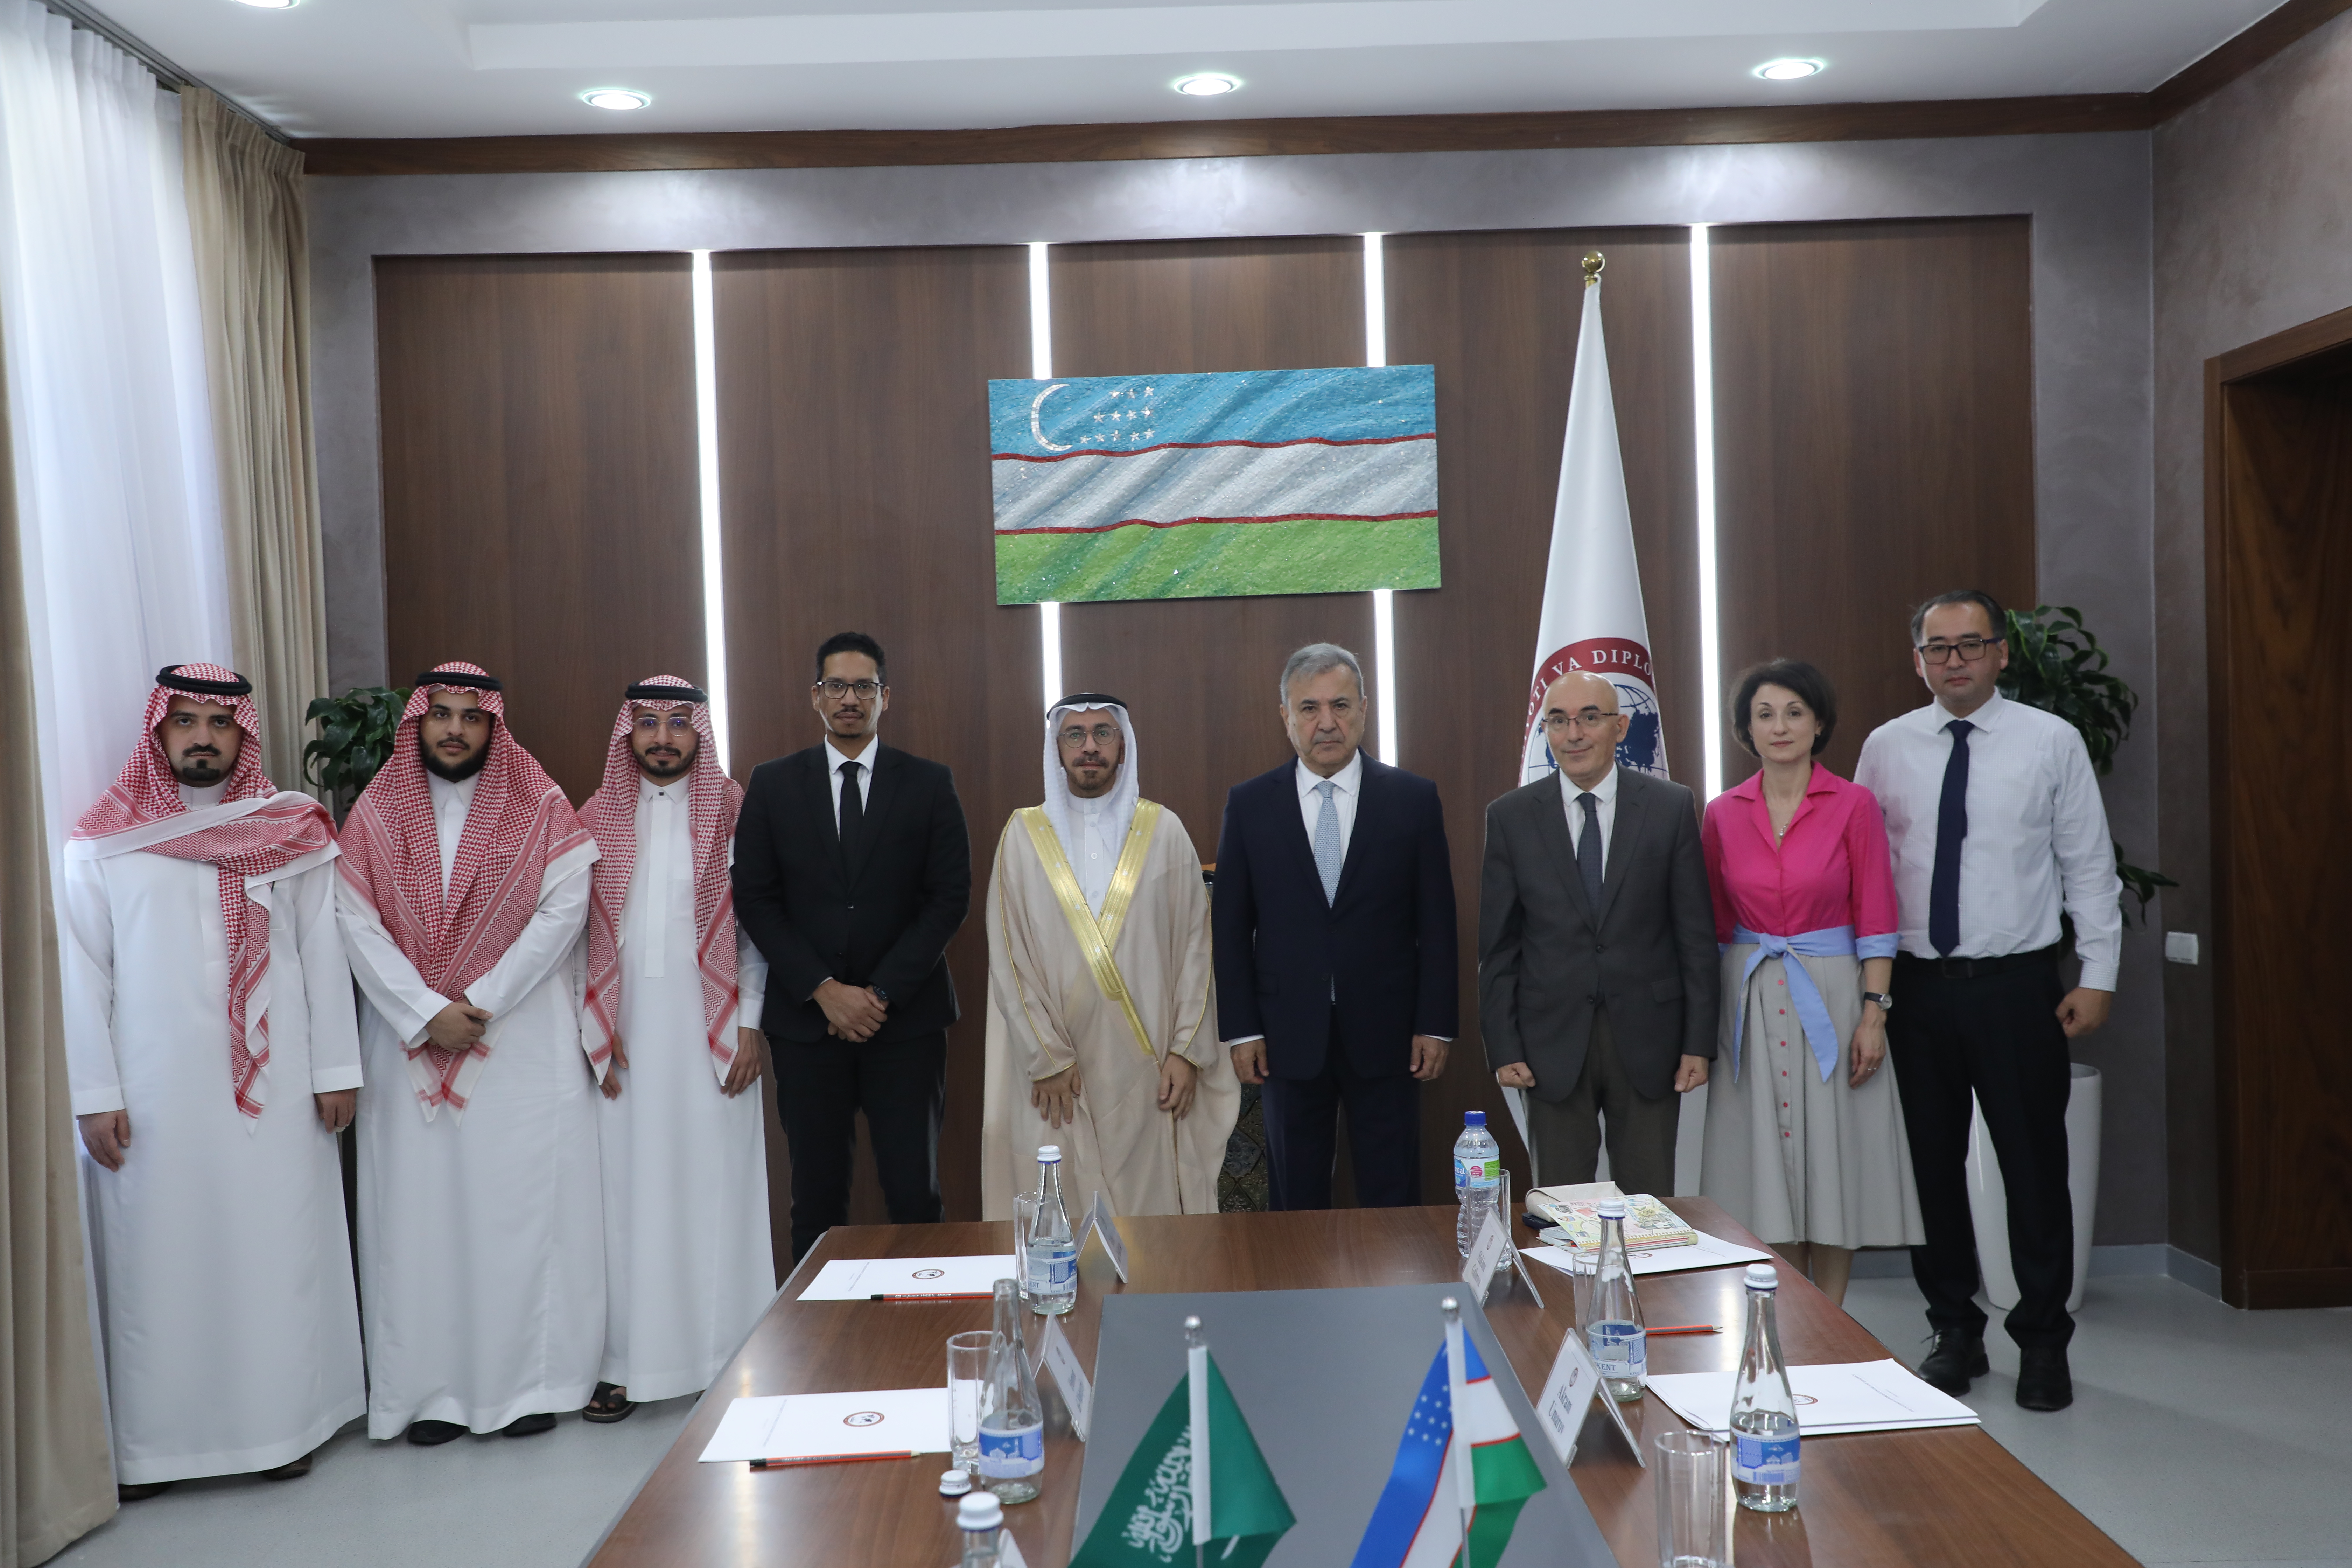 УМЭД посетила делегация Международной академии арабского языка им. короля Салмана